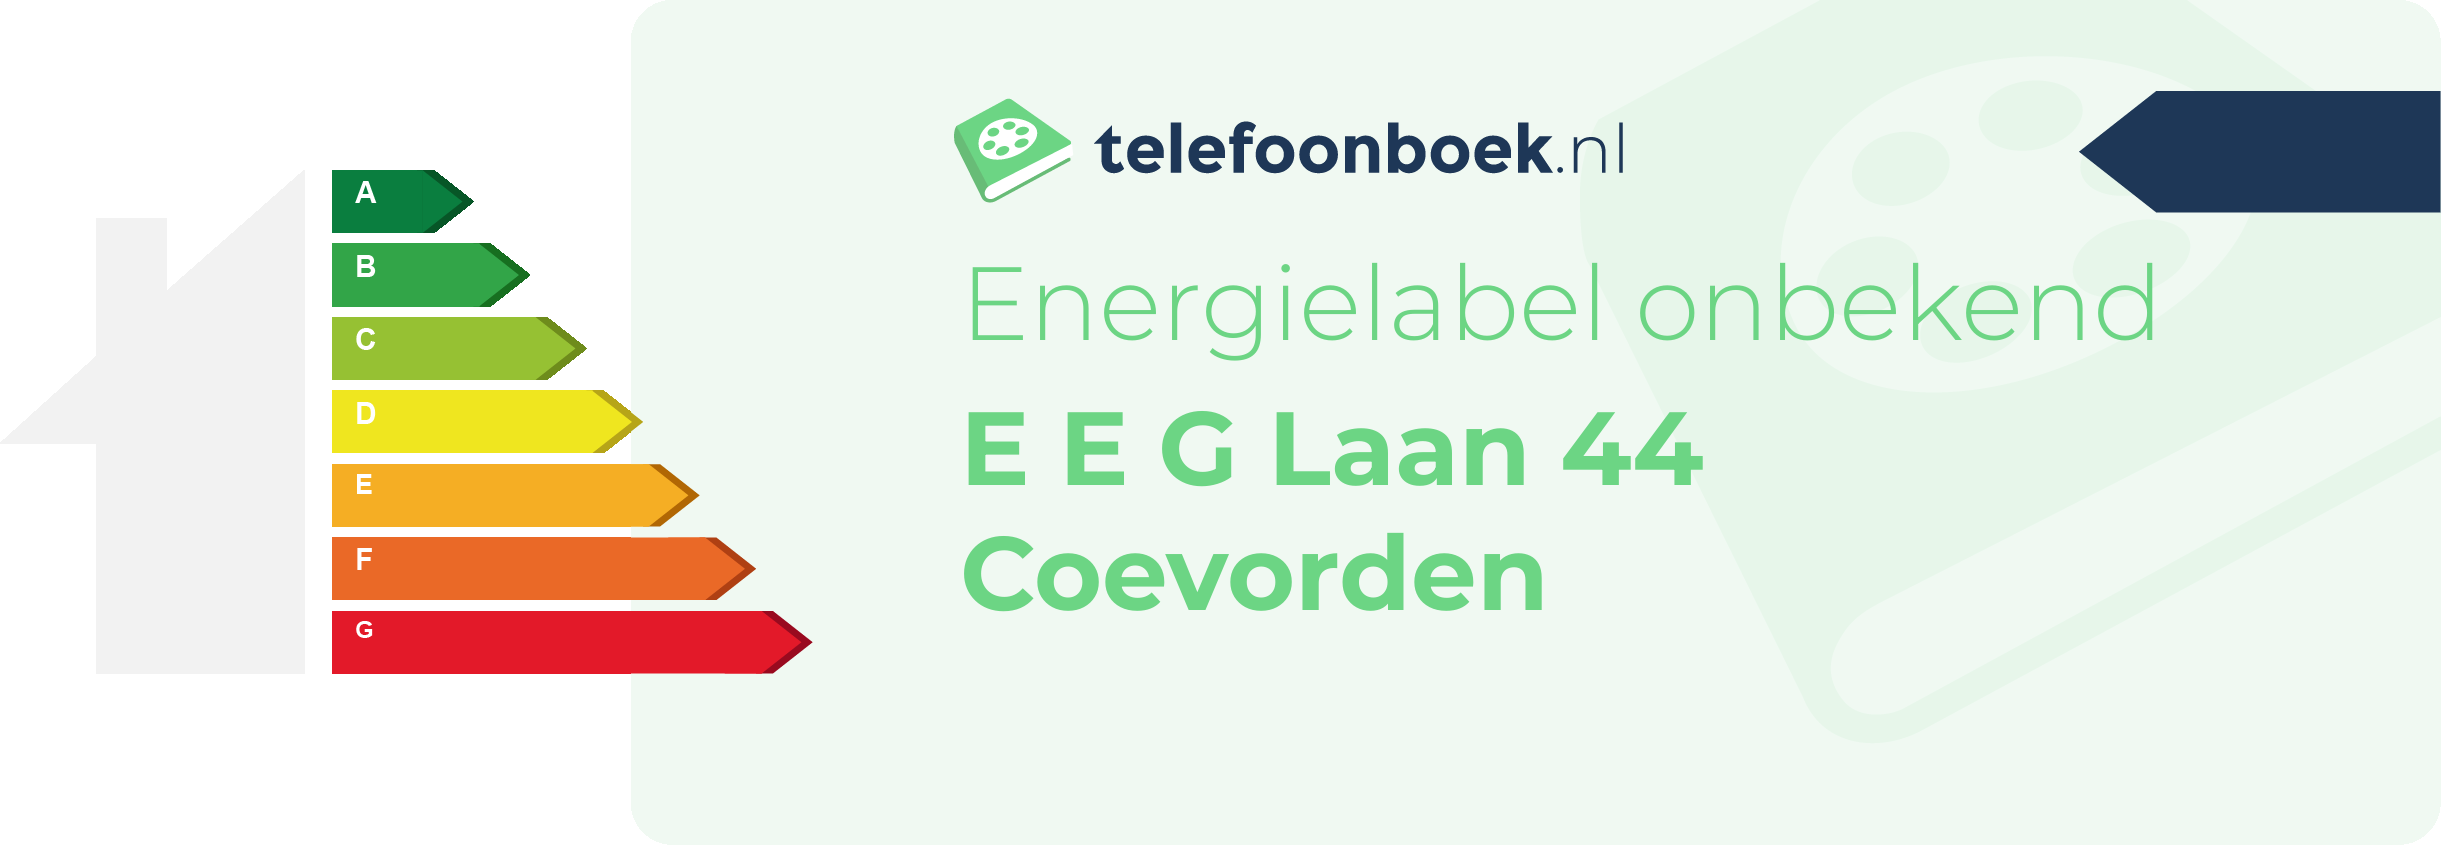 Energielabel E E G Laan 44 Coevorden